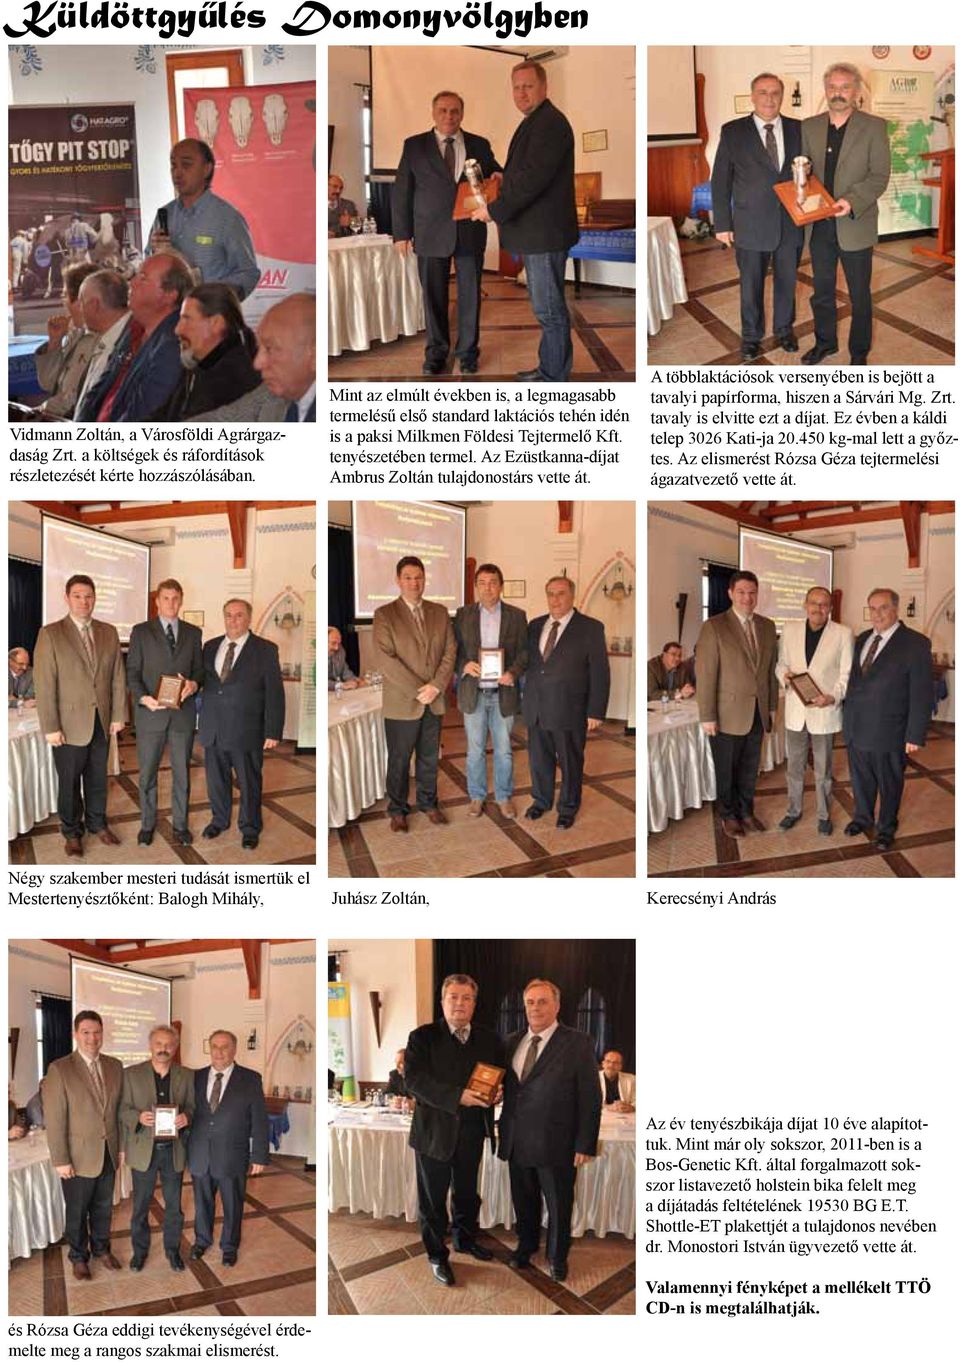 Az Ezüstkanna-díjat Ambrus Zoltán tulajdonostárs vette át. A többlaktációsok versenyében is bejött a tavalyi papírforma, hiszen a Sárvári Mg. Zrt. tavaly is elvitte ezt a díjat.